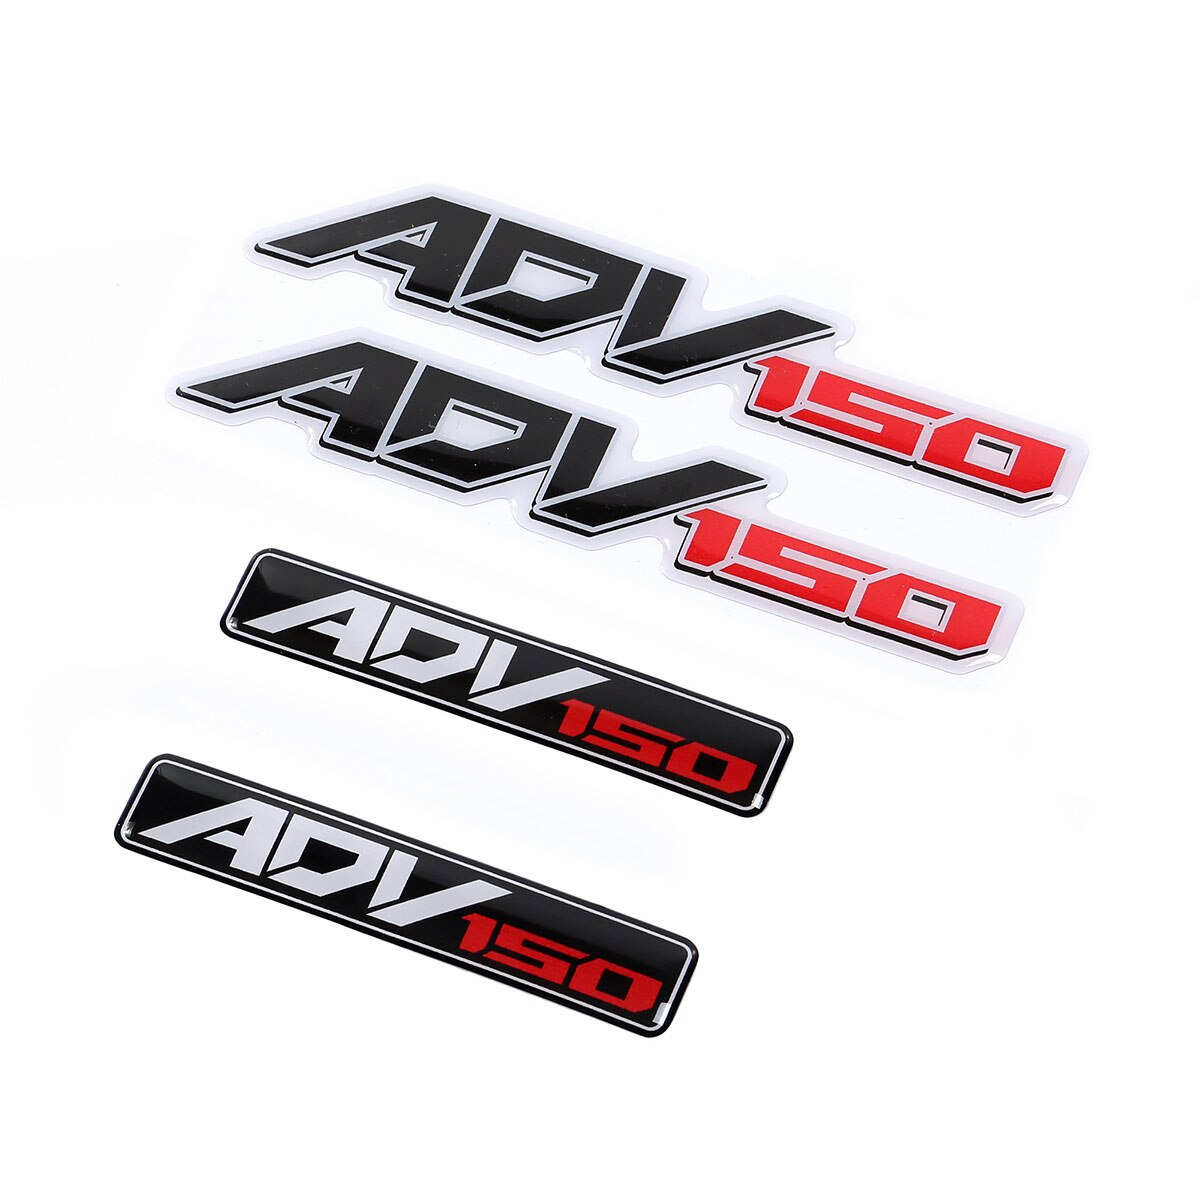 Hình dán chữ  Adv 150 dành cho xe máy Honda Adv150